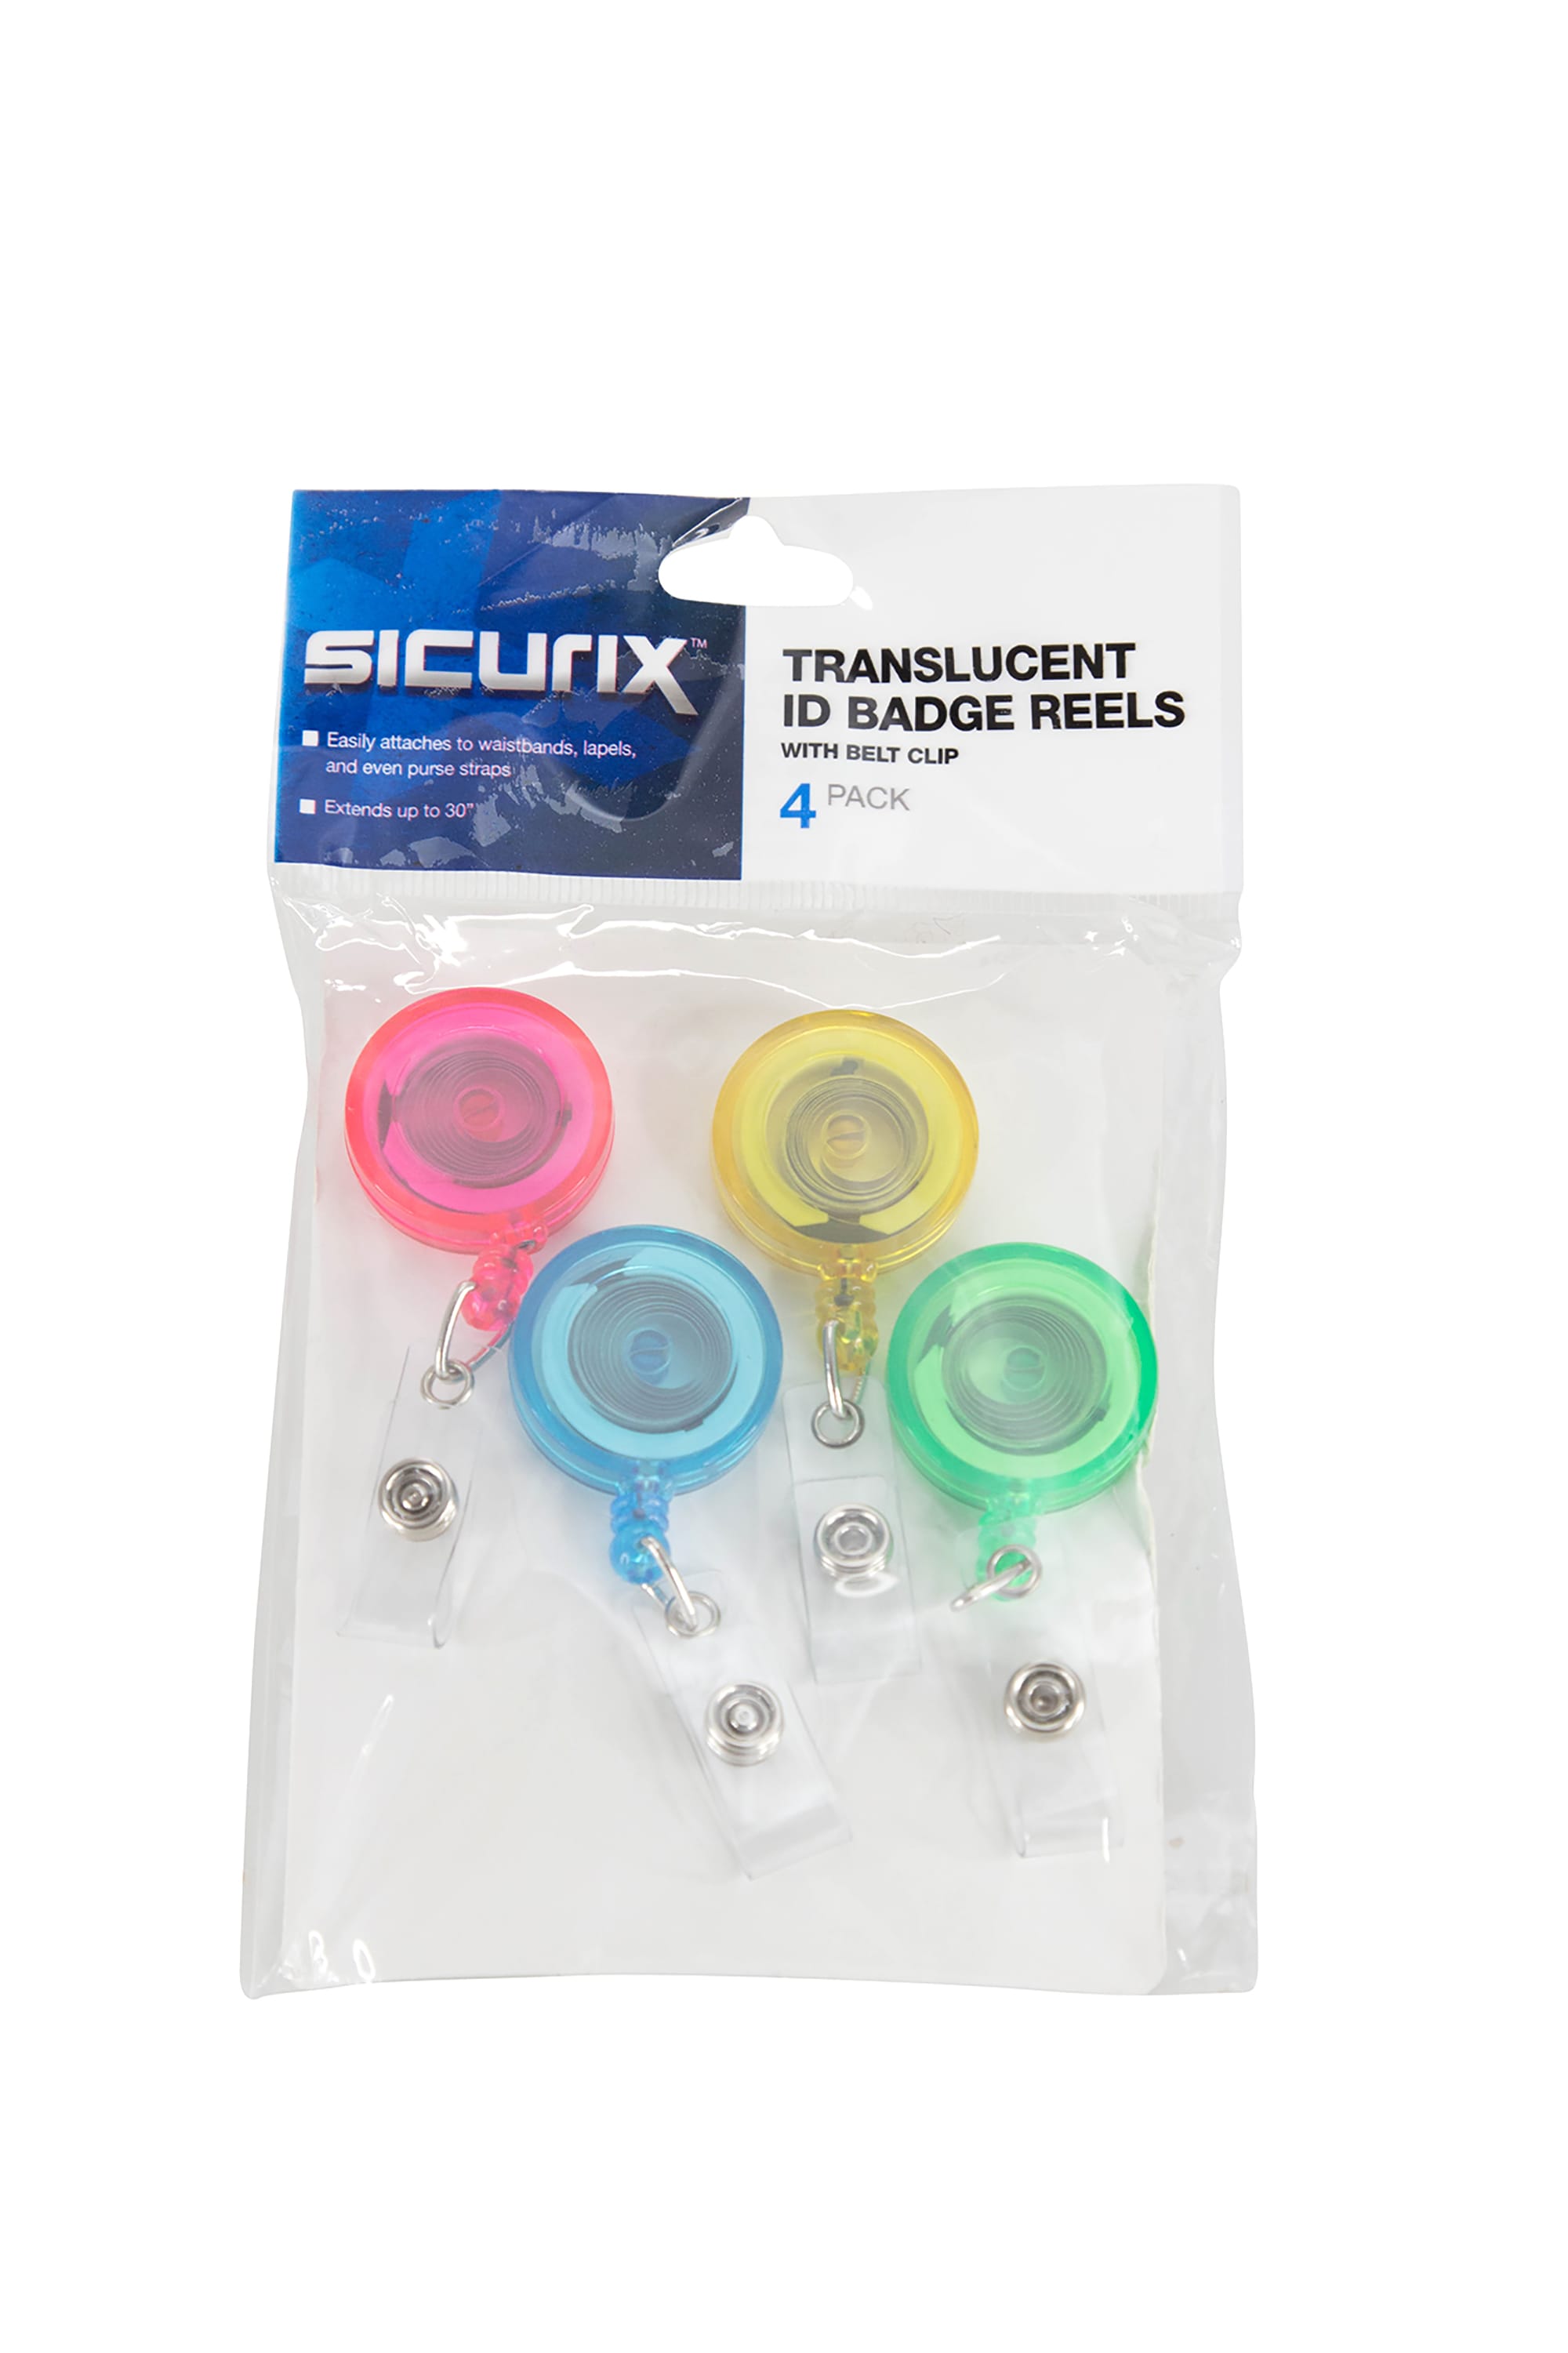 SICURIX Translucent ID Badge Reels Round Belt Clip Strap 4 Pack Raspbe –  Baumgartens 